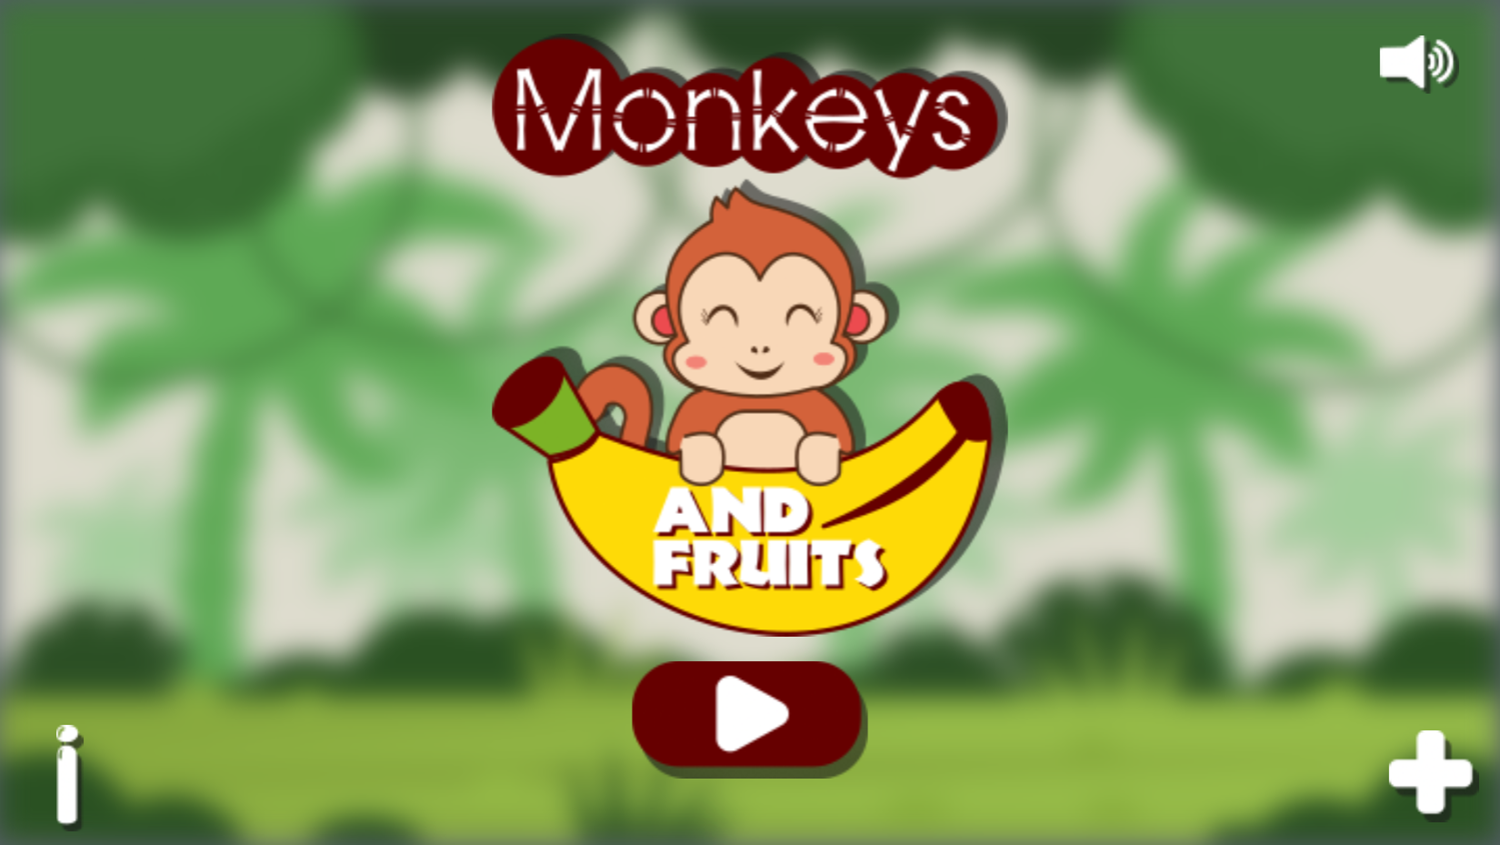 Monkeys and Fruits Game Welcome Screen Screenshot.